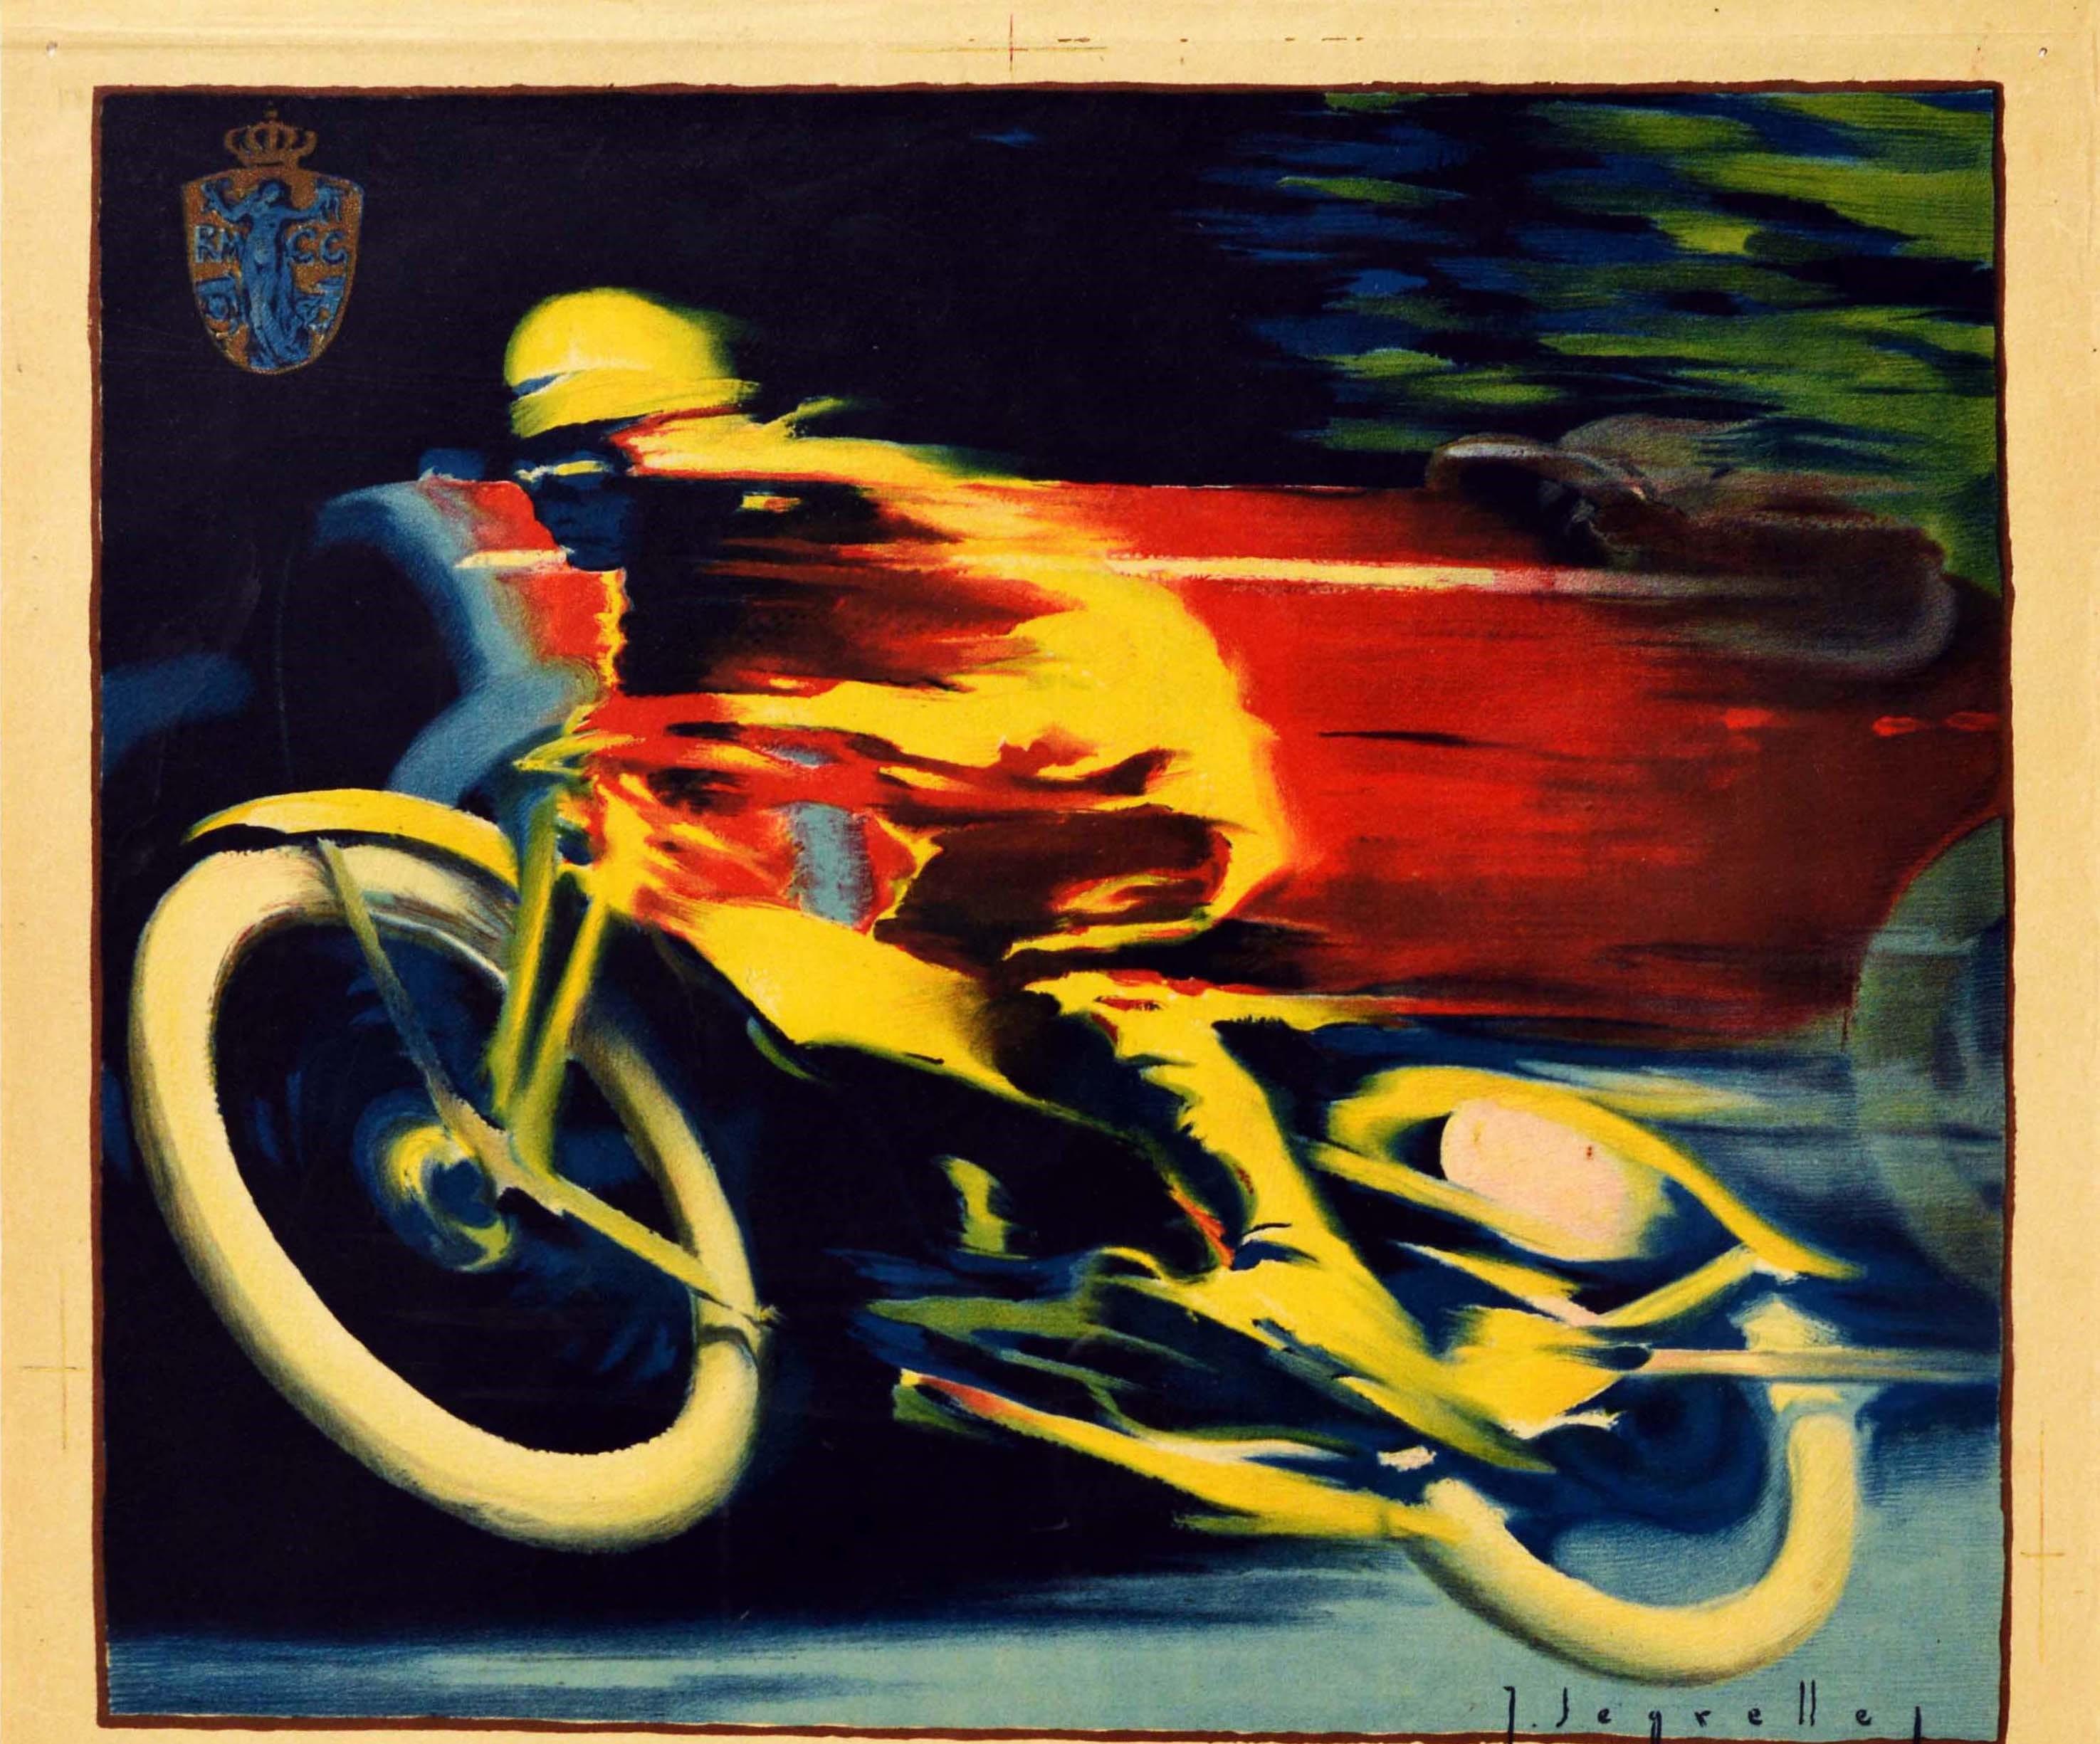 Original vintage motor sport poster for the II Gran Premio de Motocicletas y Sidecars y IV Gran Premio de Autociclos del Reial Moto Club de Catalunya (RMCC; founded 1916) / II Motorcycle Grand Prix and Sidecars and the IV Grand Prix of Motorcycles